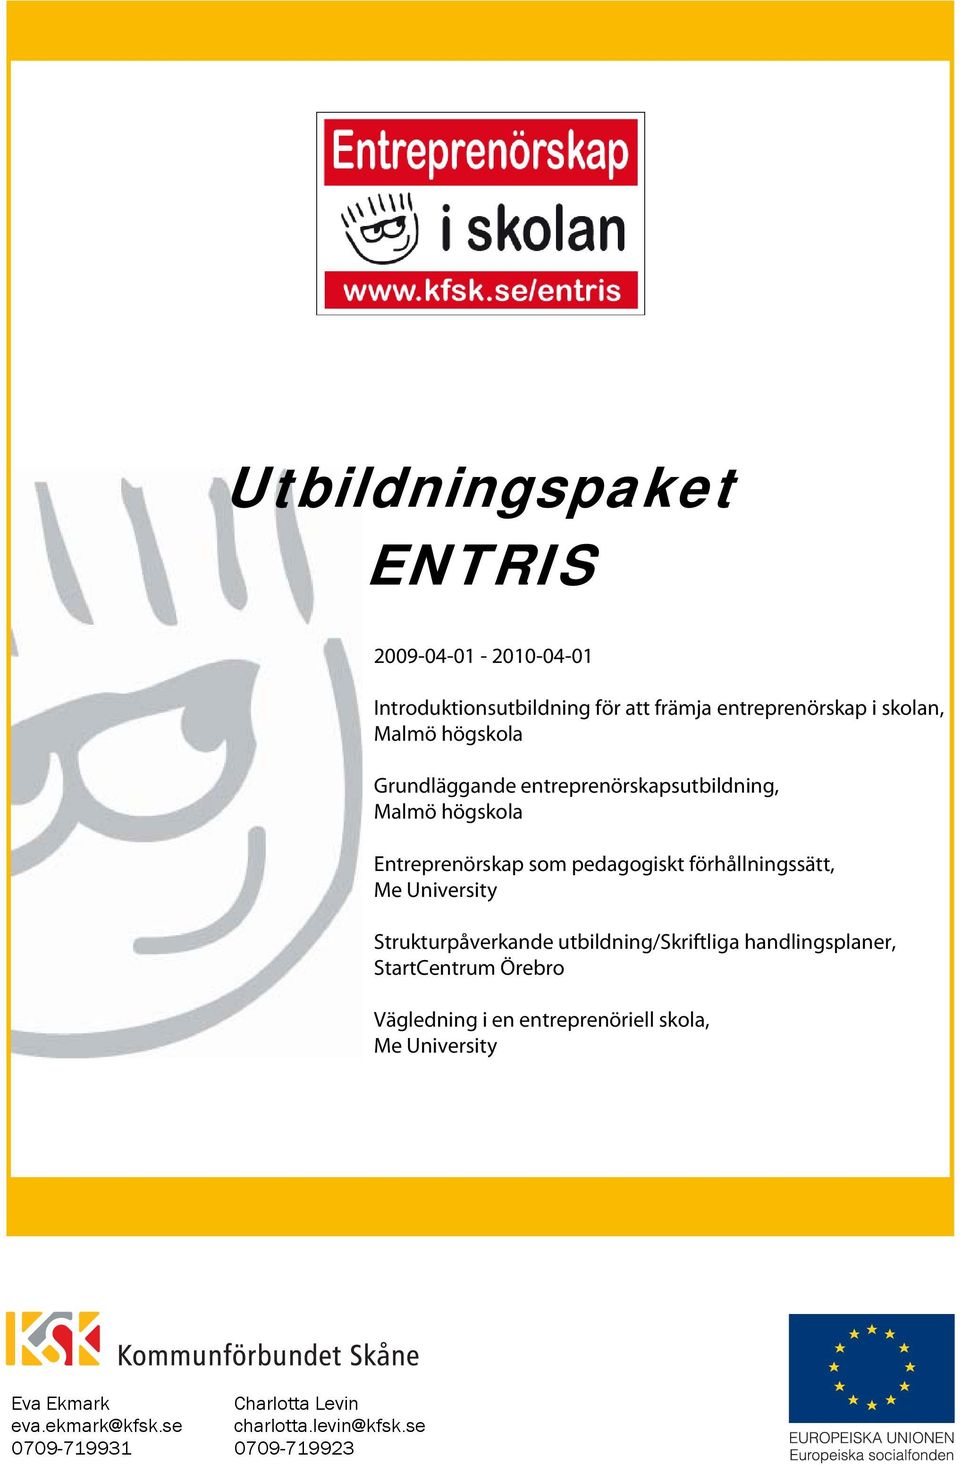 Me University Strukturpåverkande utbildning/skriftliga handlingsplaner, StartCentrum Örebro Vägledning i en